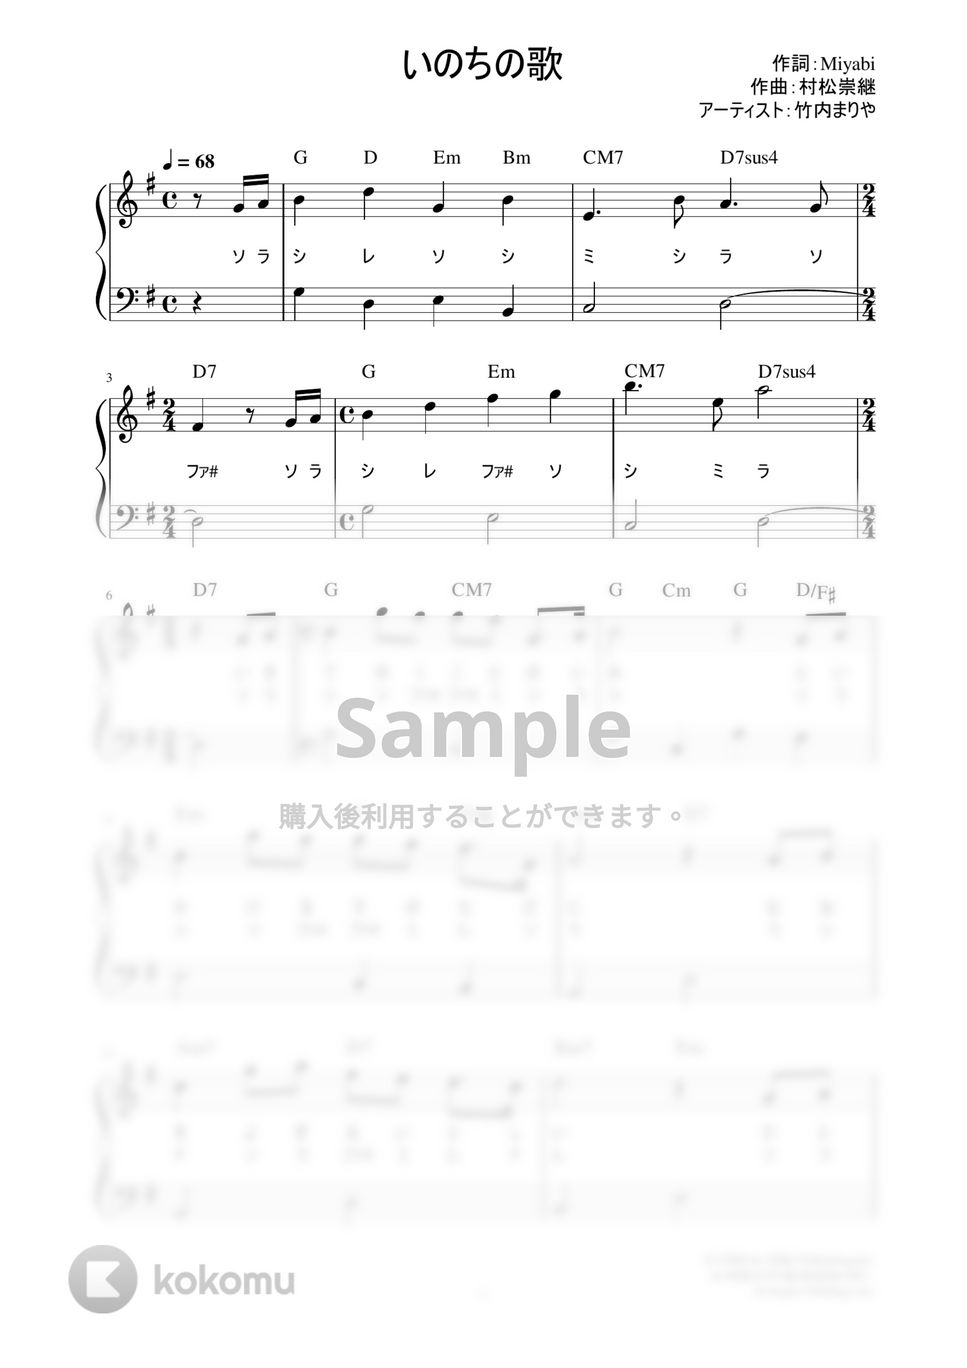 竹内まりや - いのちの歌 (かんたん / 歌詞付き / ドレミ付き / 初心者) by piano.tokyo